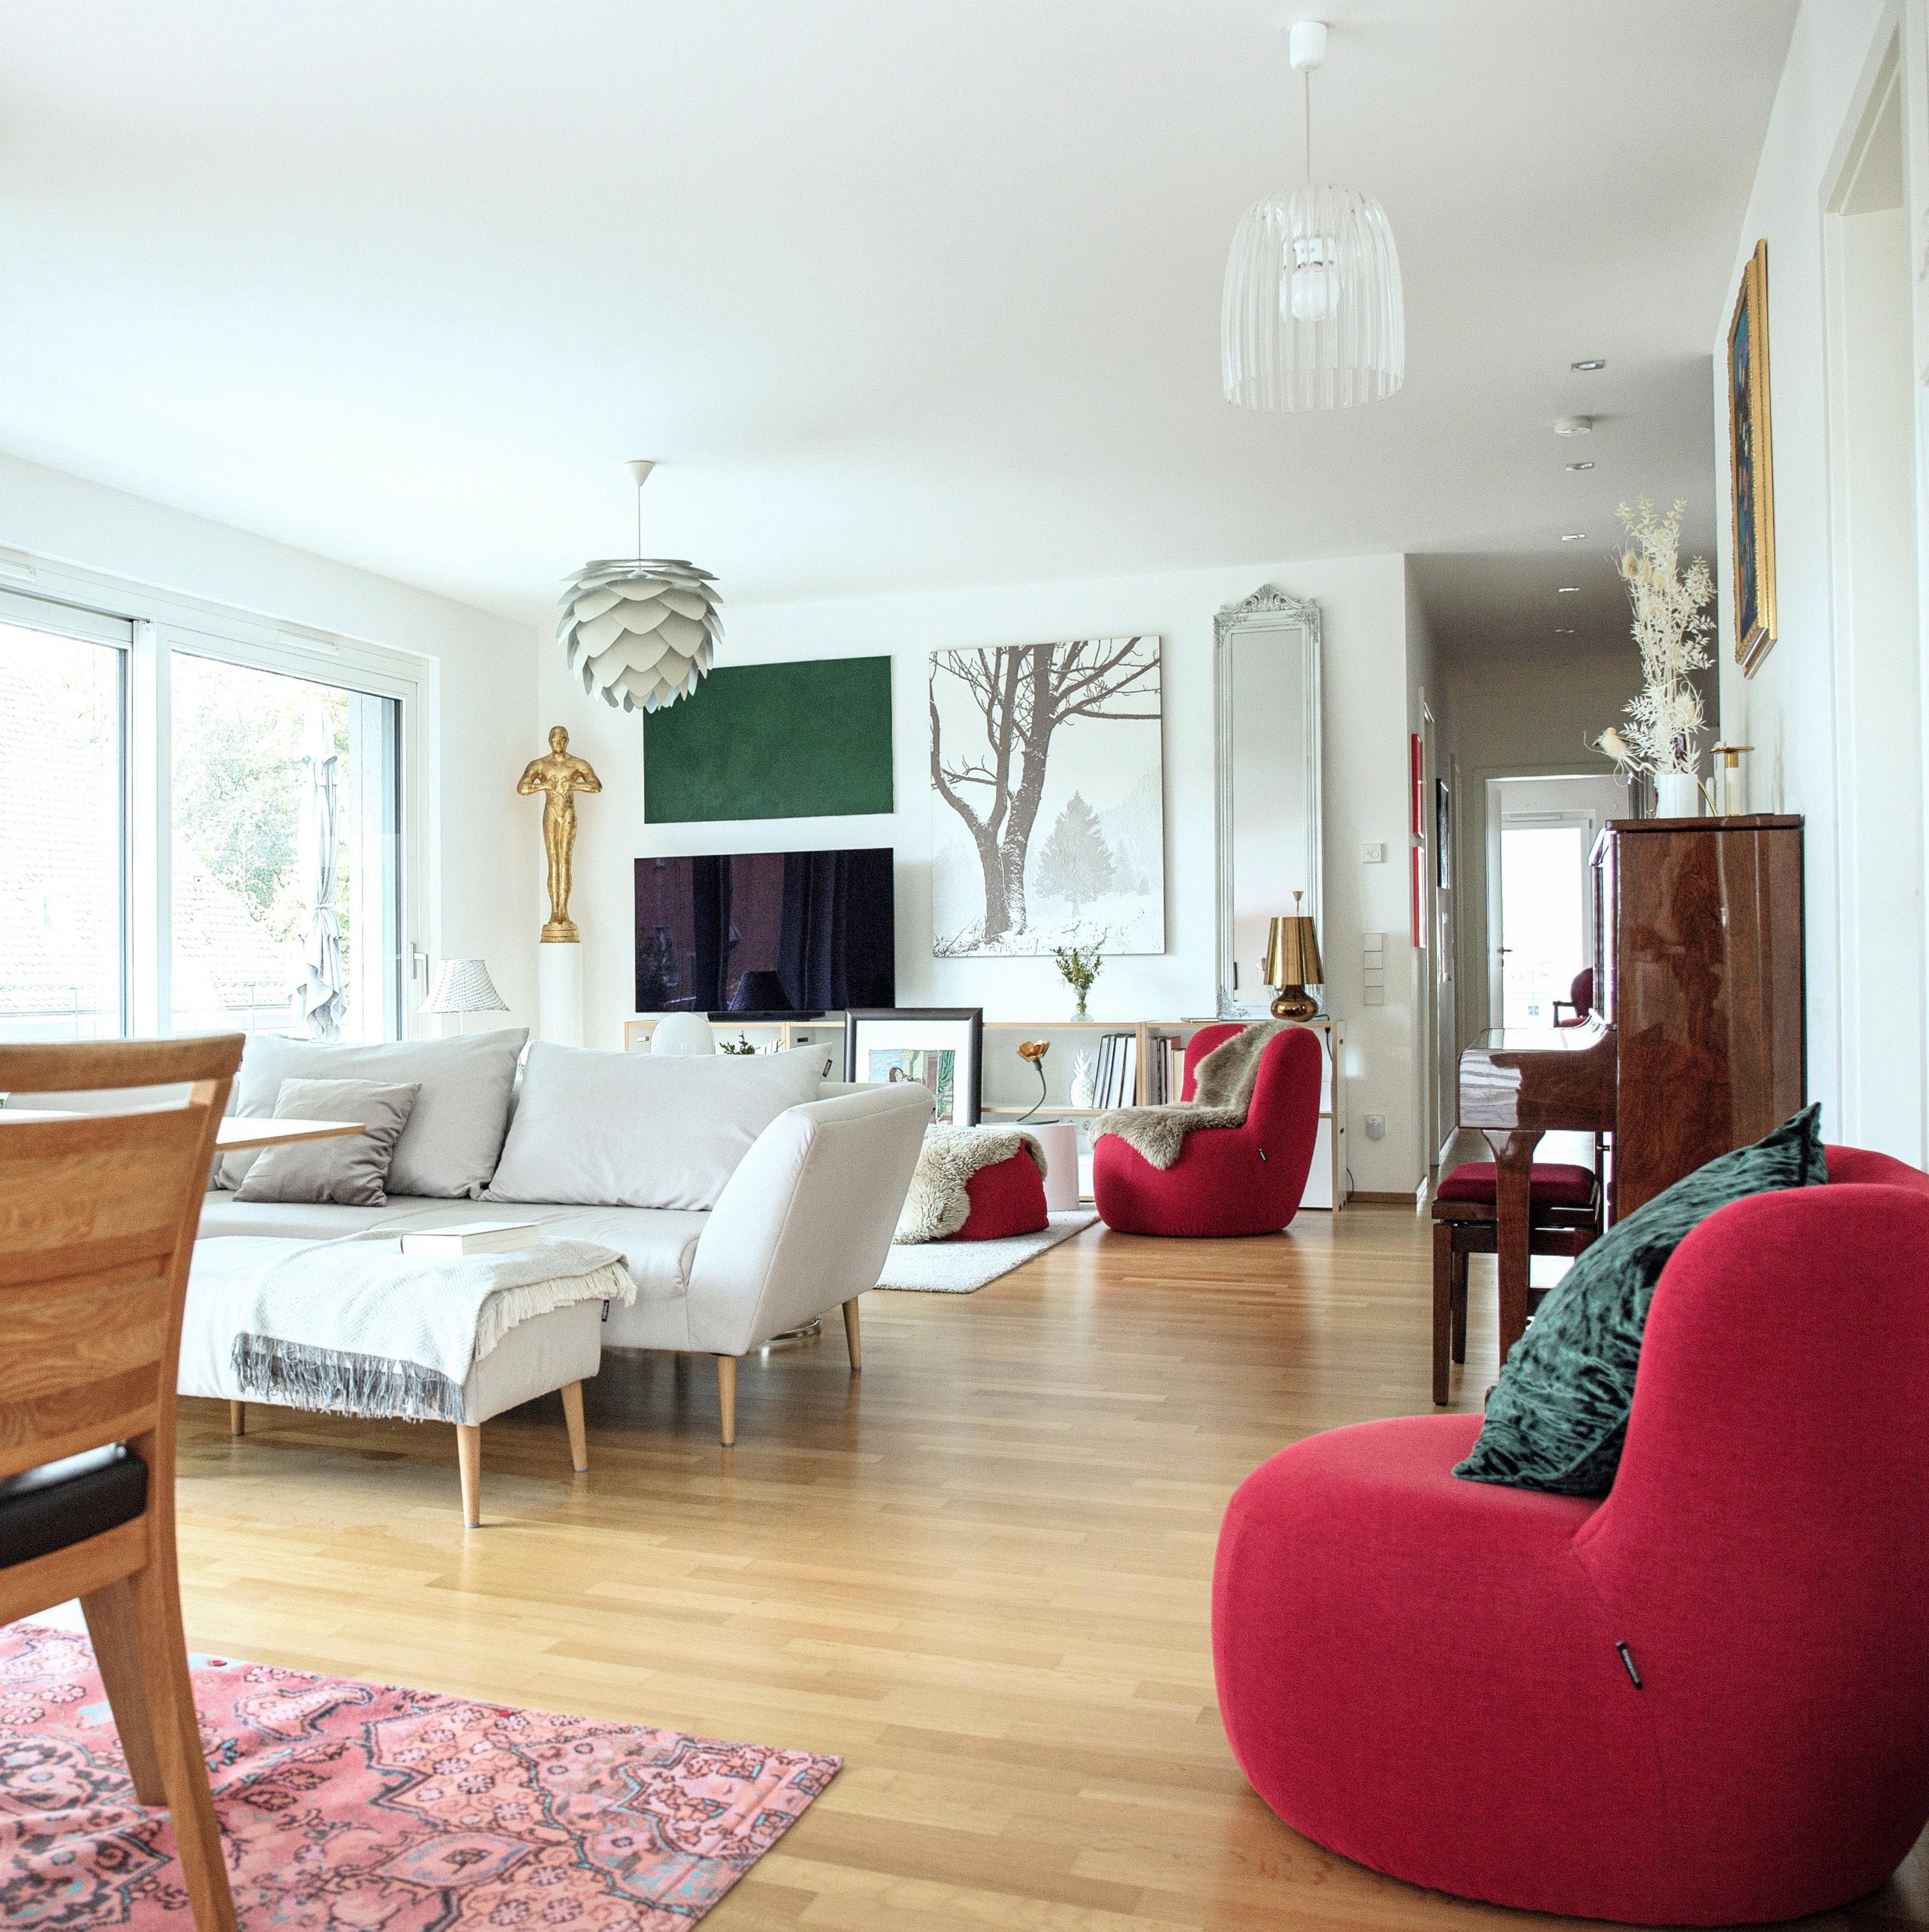 Meine lieblings-couch und -Sessel
#wohnen #einrichen#cosyhome #wohnzimmer